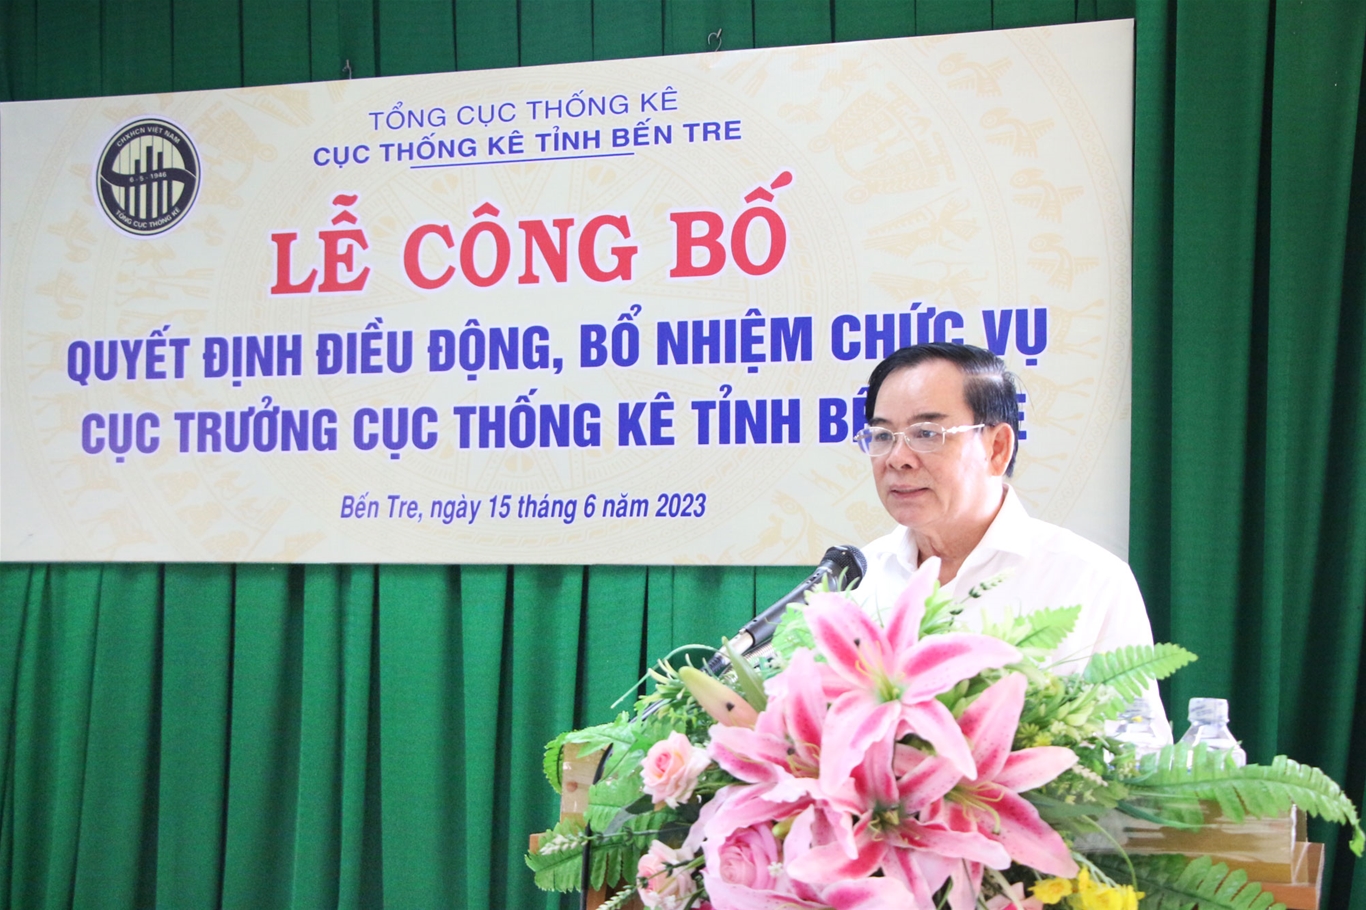 Tổng cục trưởng Tổng cục Thống kê trao quyết định điều động, bổ nhiệm Cục trưởng Cục Thống kê tỉnh Bến Tre đối với ông Võ Thanh Sang 2